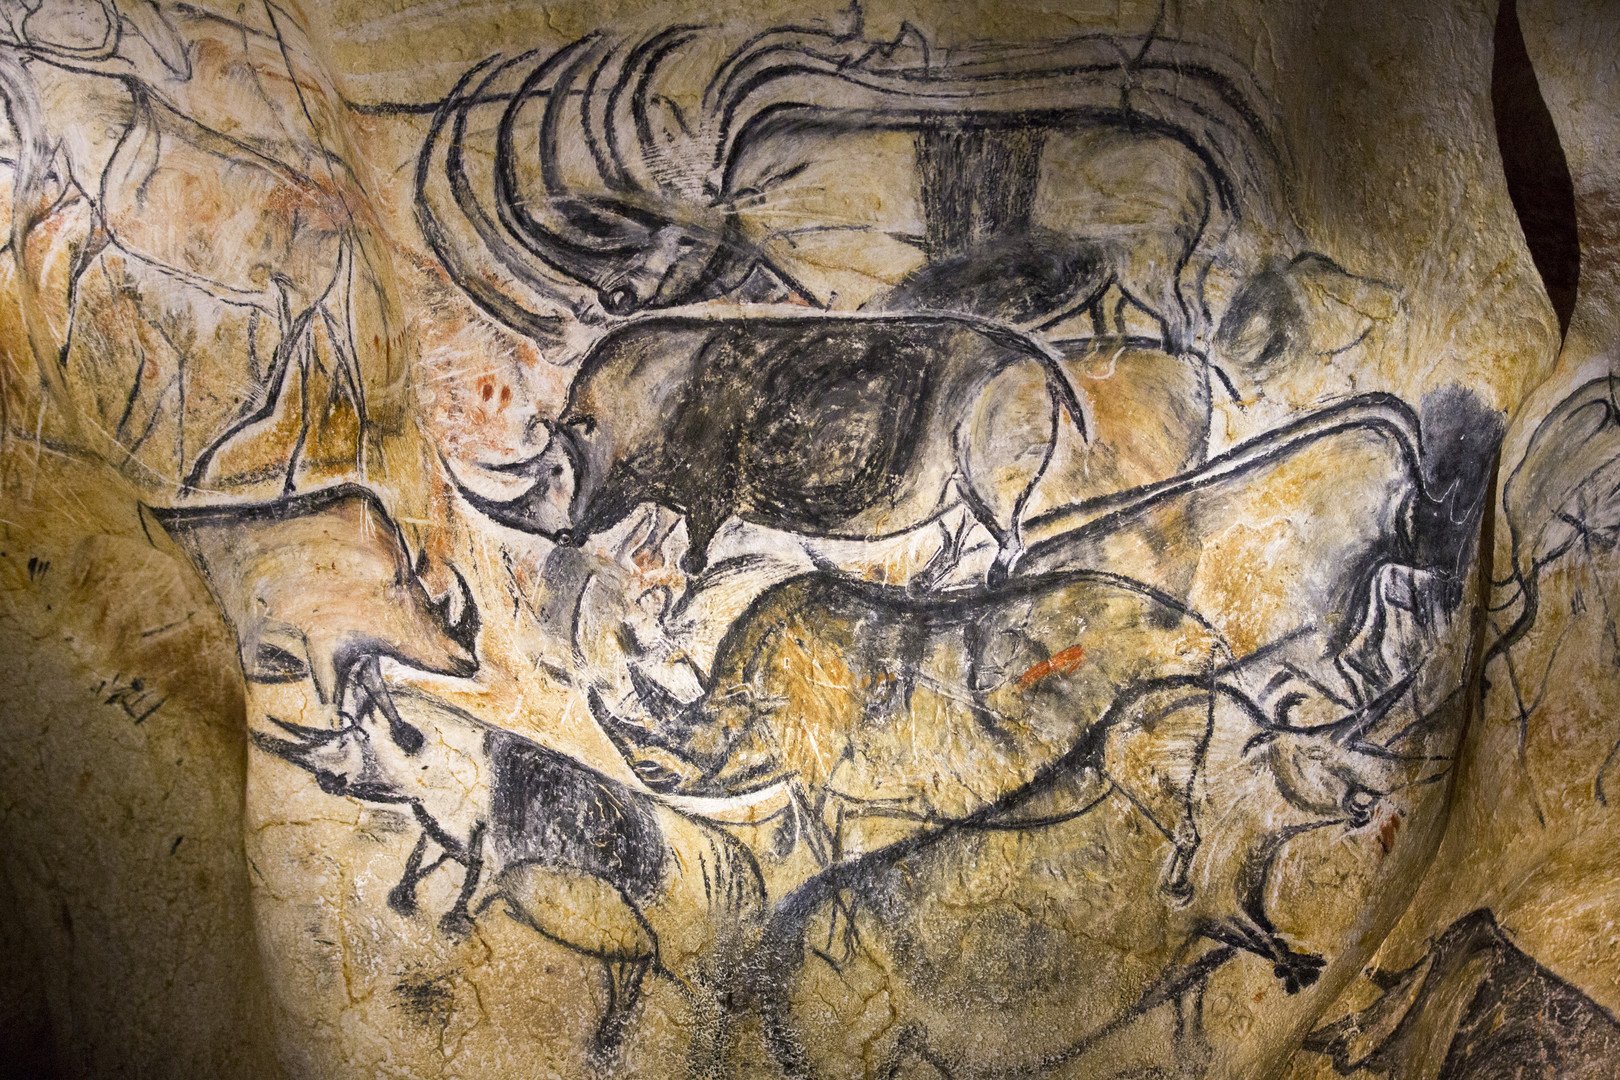 بالصور ... رسومات منذ 35 ألف عام تكشف عن أولى الكوارث الطبيعية في العالم 